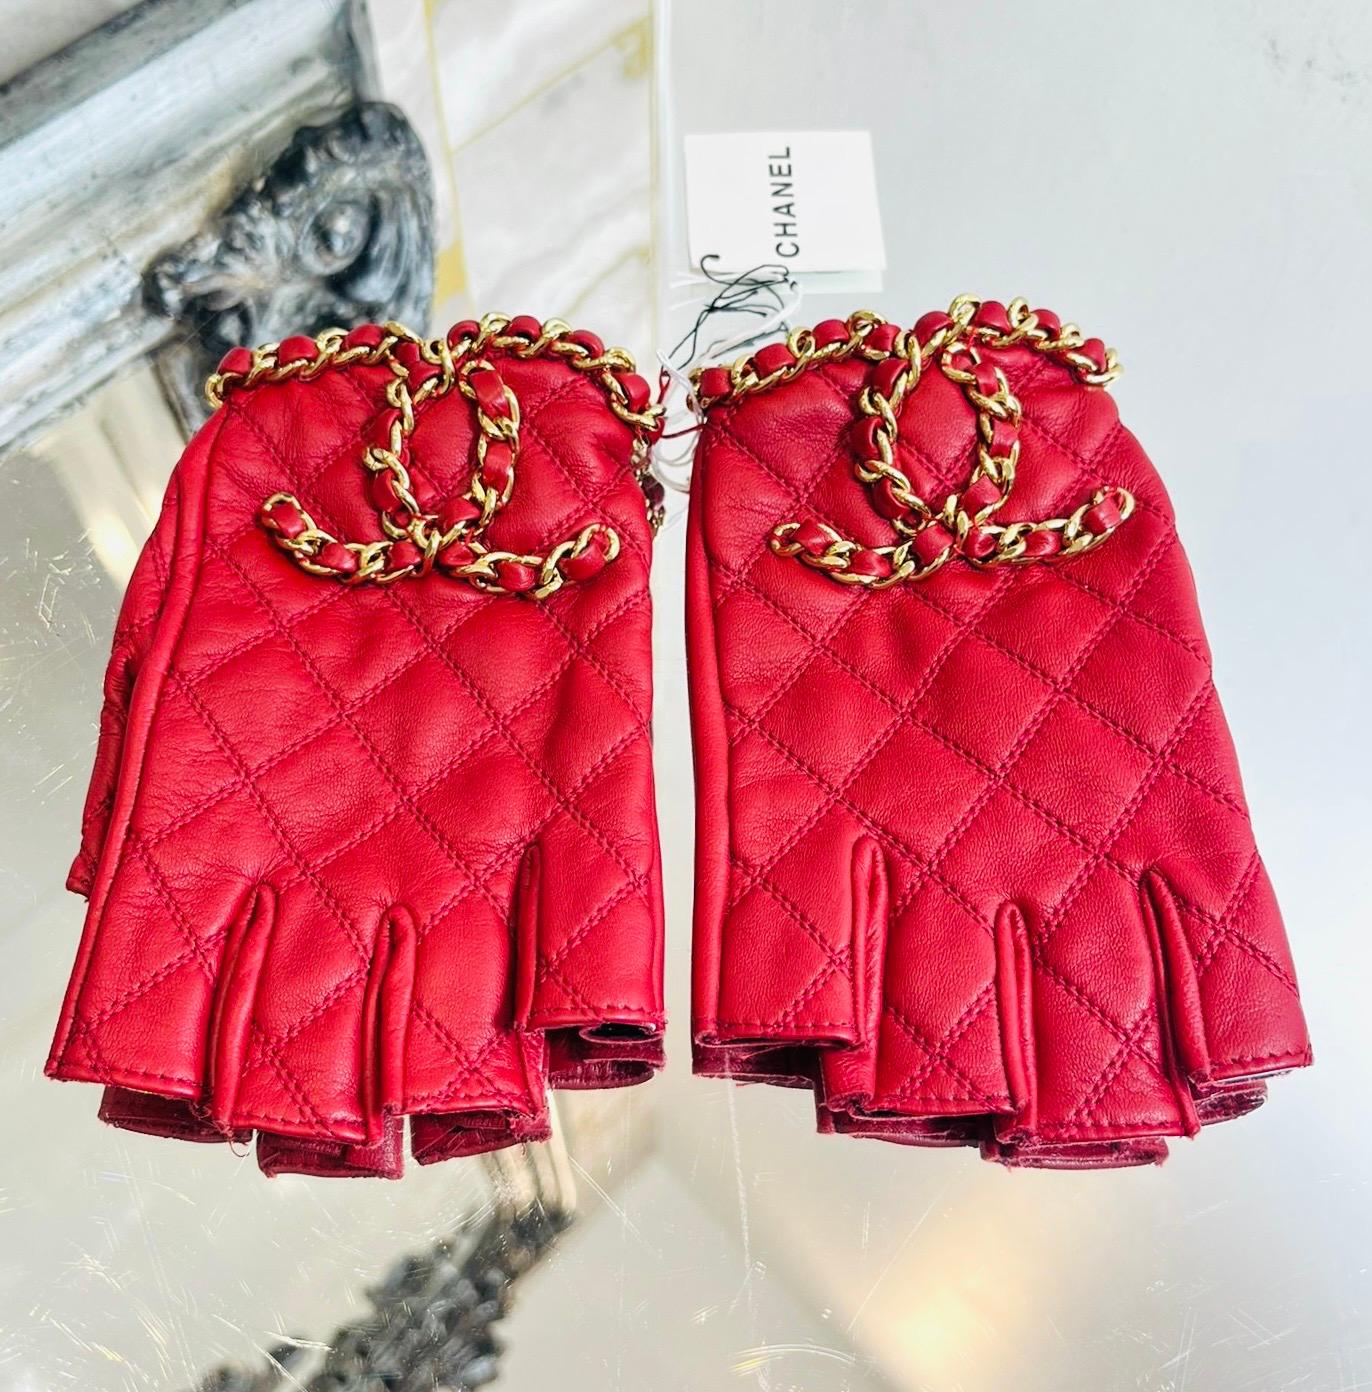 Brandneu - Chanel 'CC' Logo Kette & Leder Fingerlose Handschuhe

Rote Handschuhe mit der für Chanel typischen Rautensteppung.

Mit der kultigen, verschlungenen Kette und dem CC